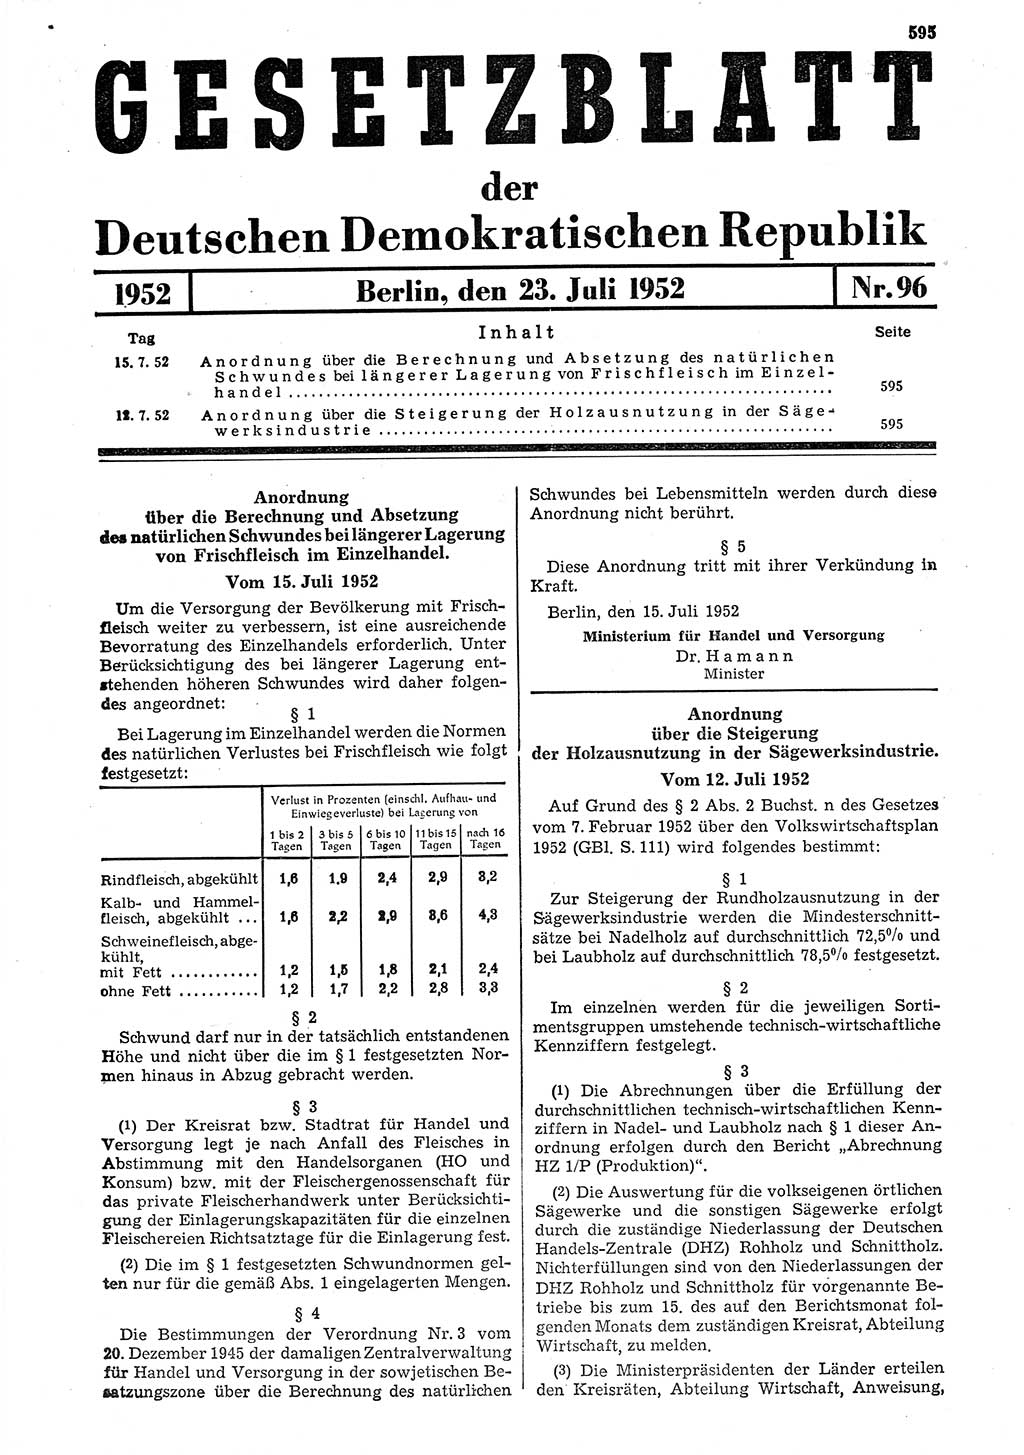 Gesetzblatt (GBl.) der Deutschen Demokratischen Republik (DDR) 1952, Seite 595 (GBl. DDR 1952, S. 595)